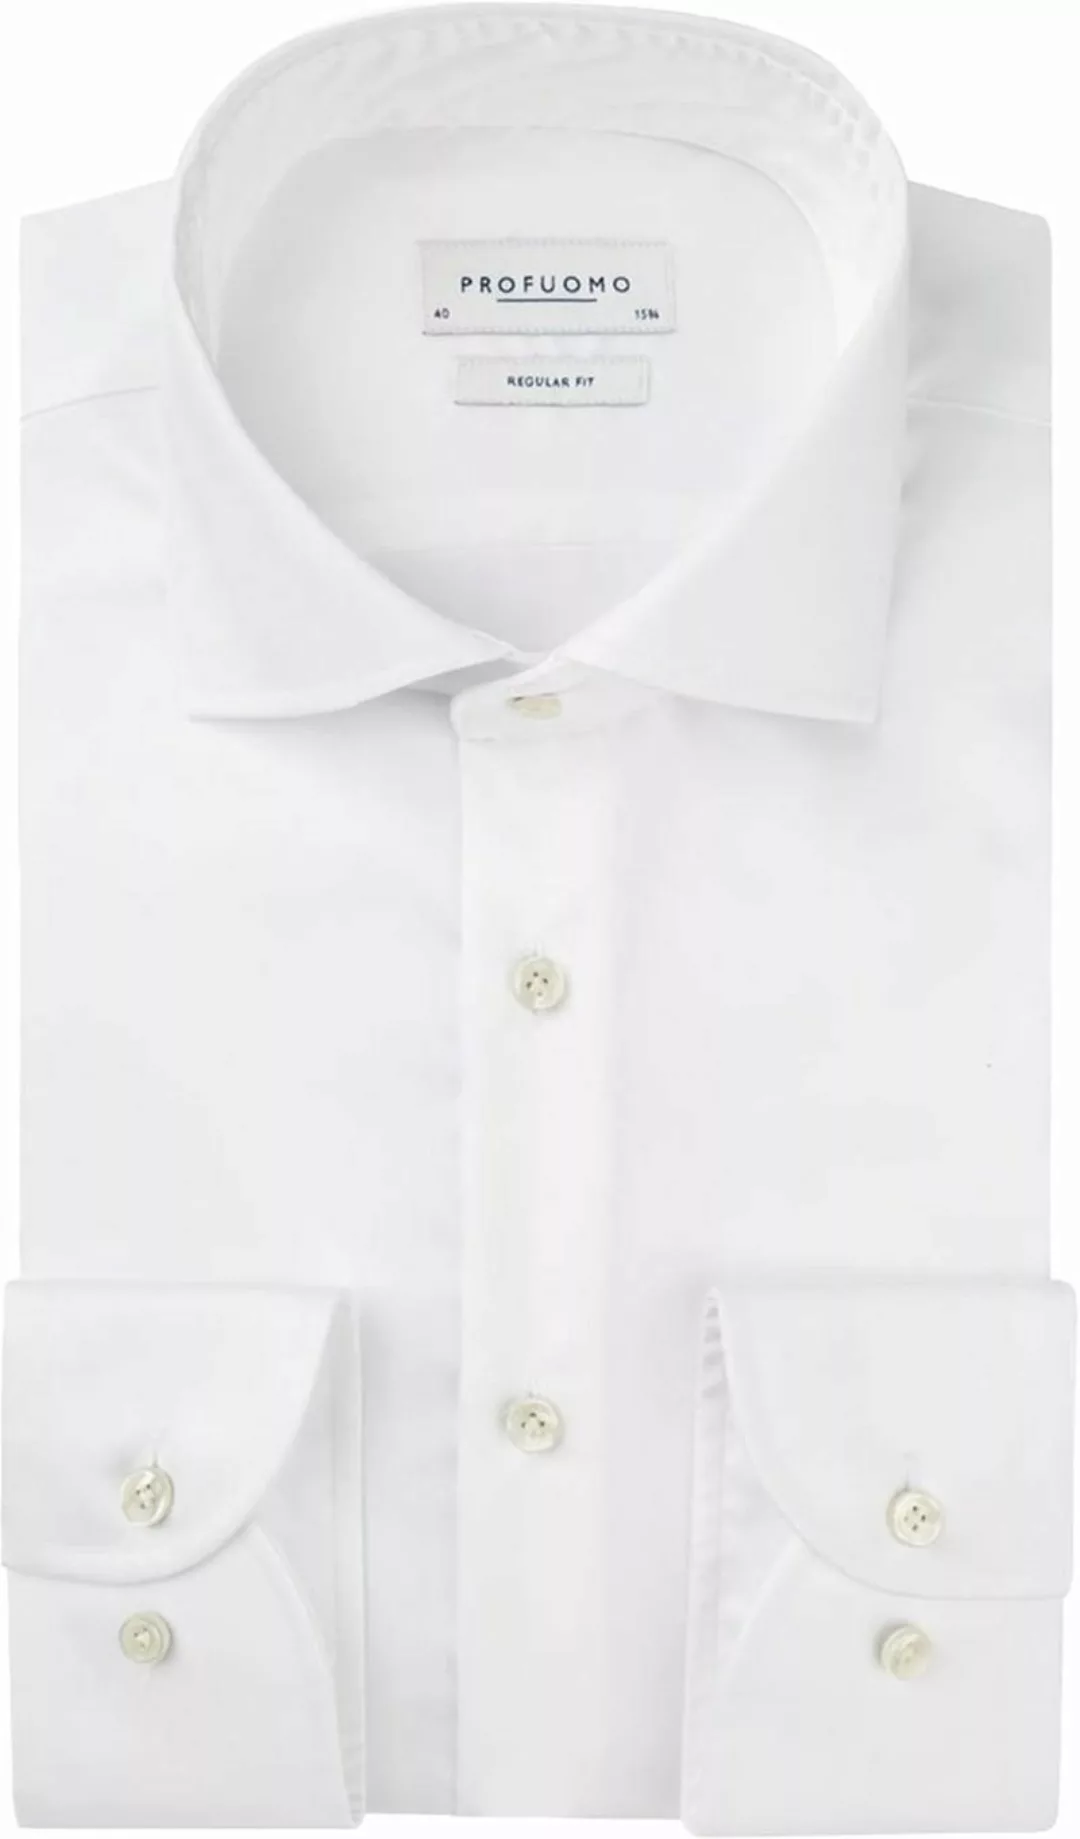 Profuomo Originale Hemd RF Weiß - Größe 40 günstig online kaufen